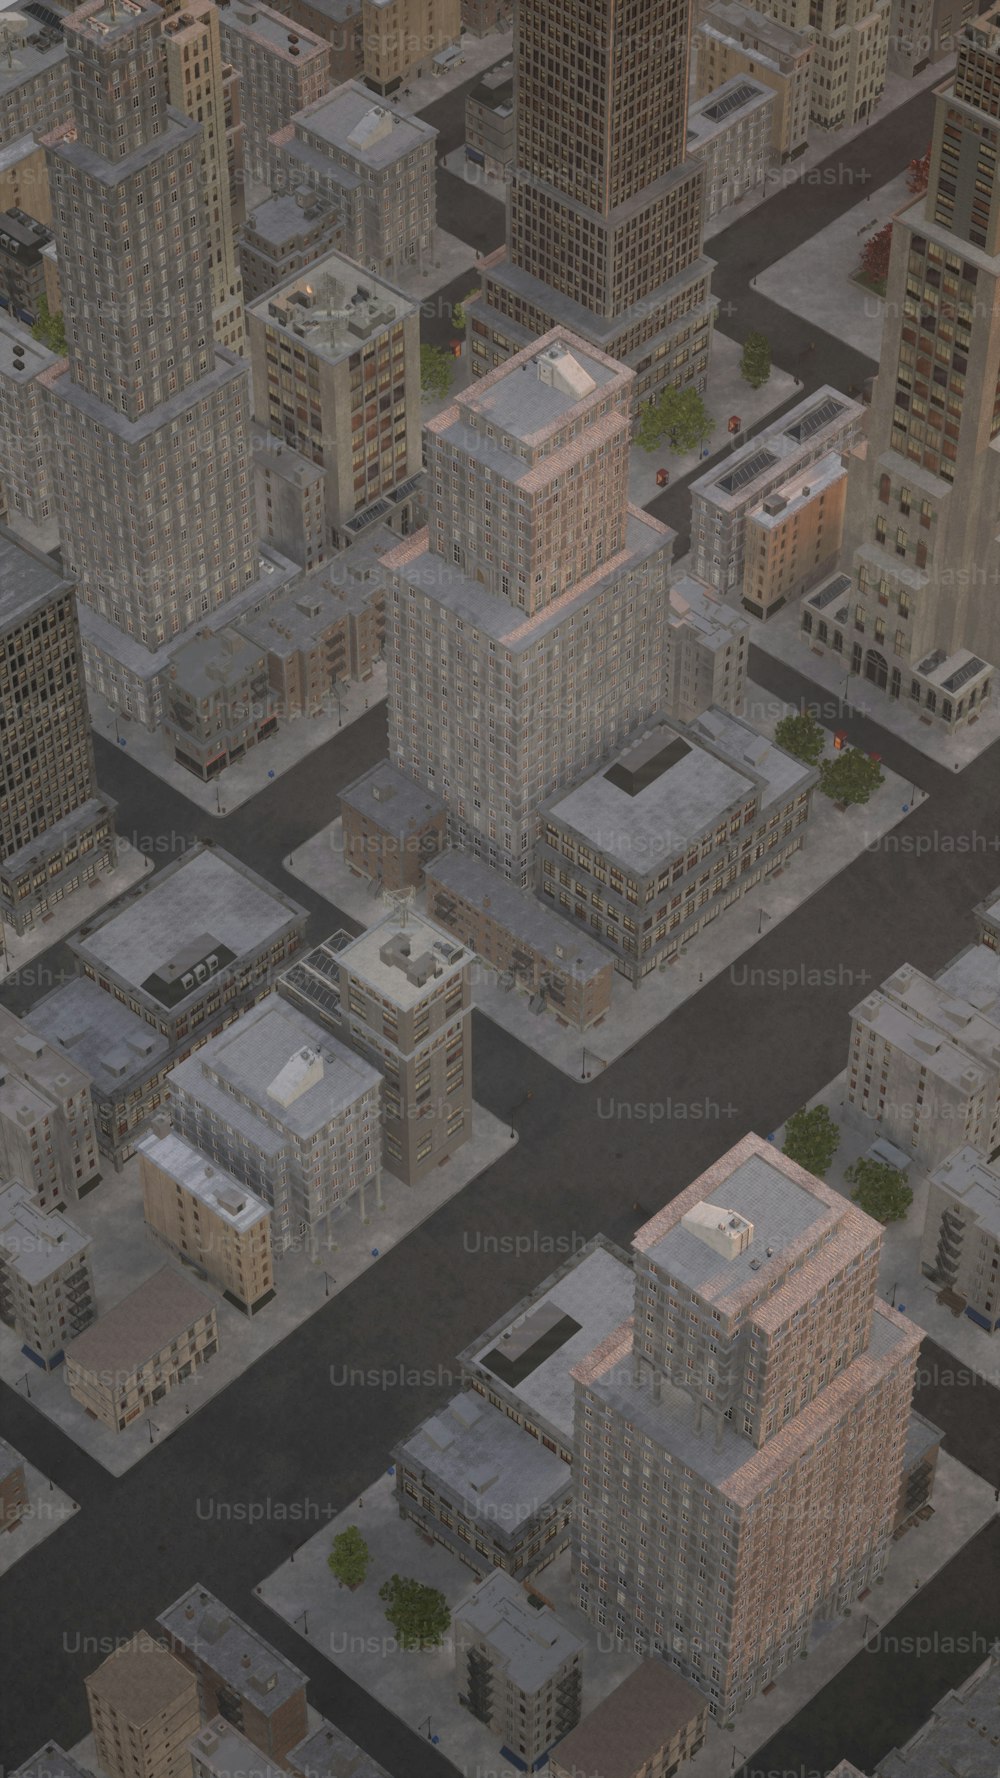 Una veduta aerea di una città con edifici alti